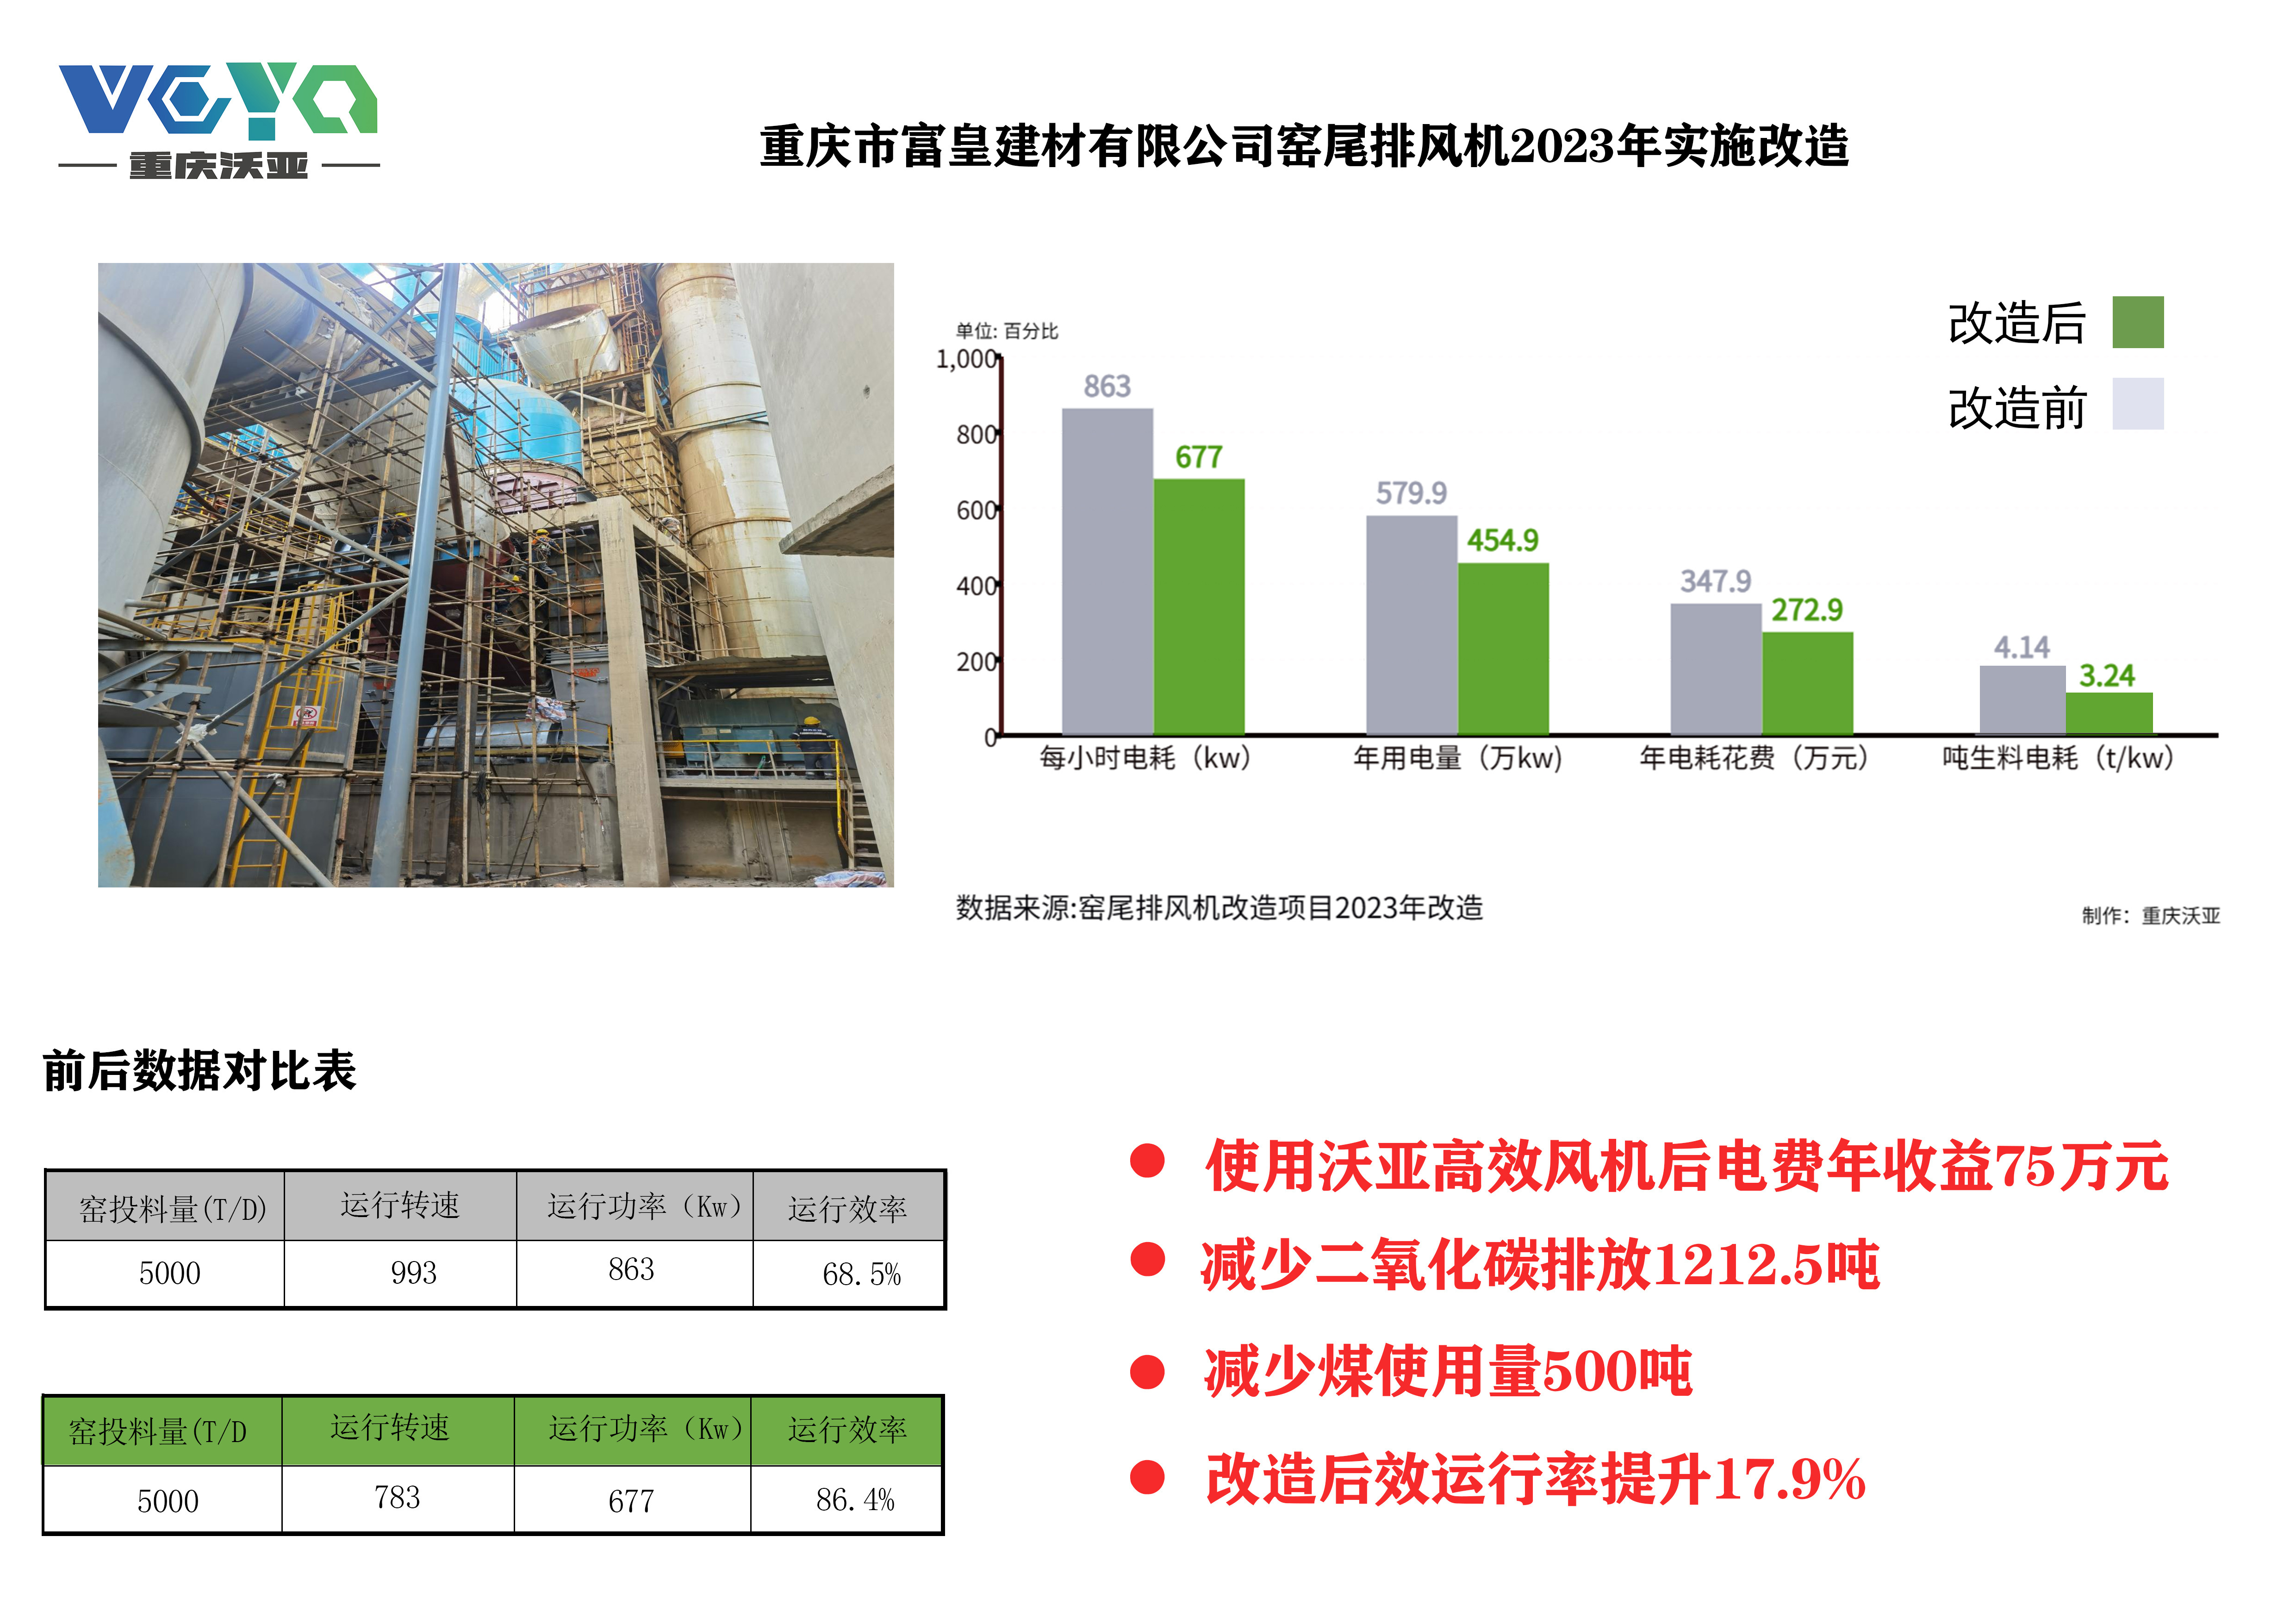 重庆市富皇建材有限公司窑尾排风机2023年实施改造